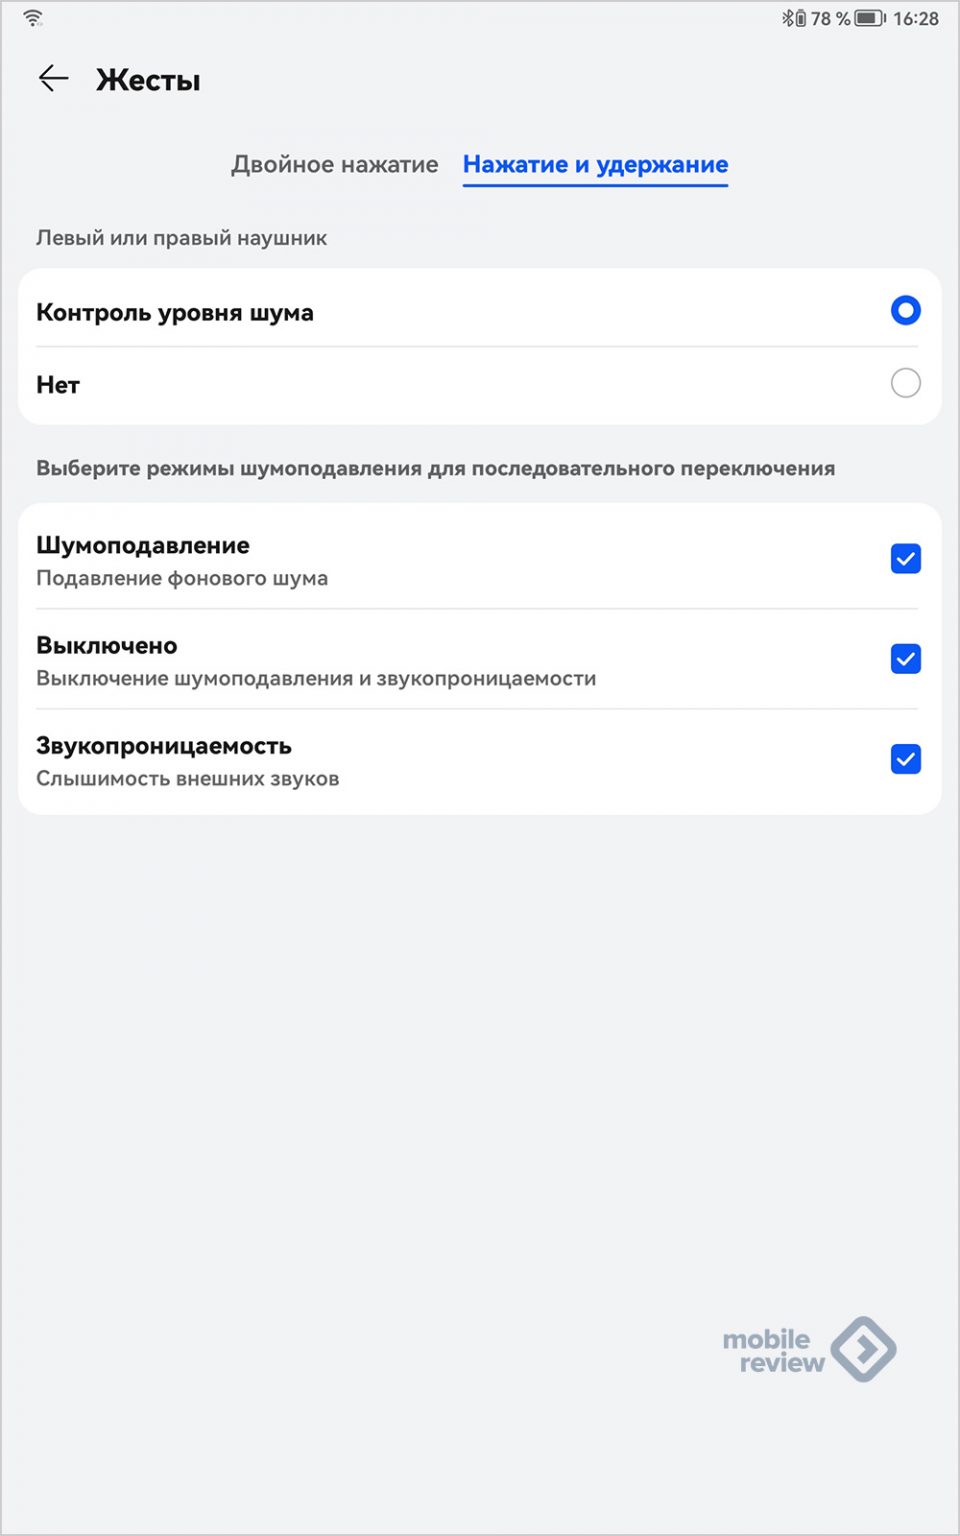 Код россии для мобильного телеграмм телефона с мобильного бесплатно фото 30